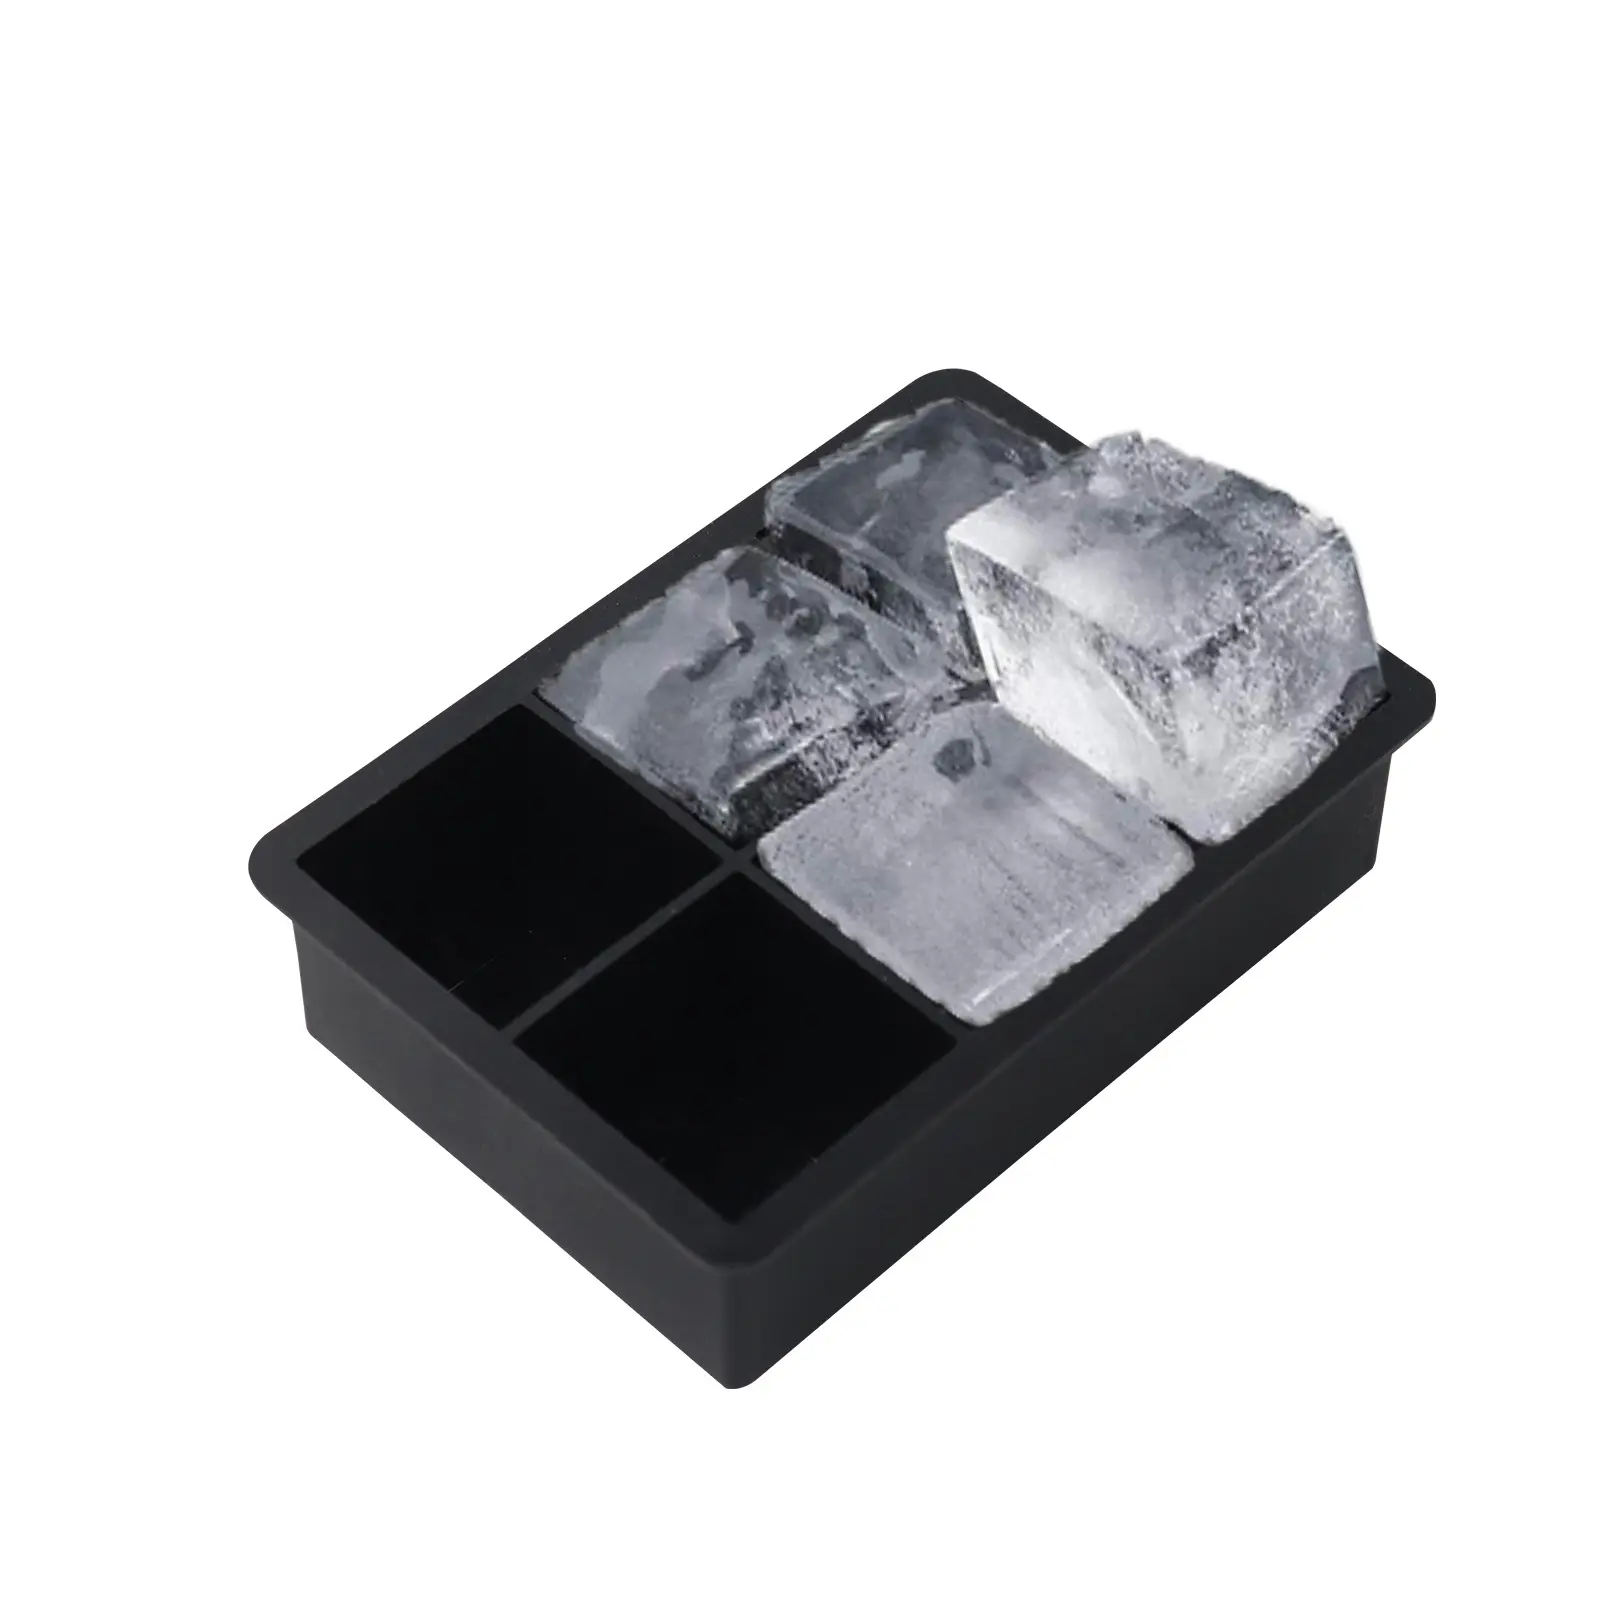 La migliore vendita della cina cubo vassoio con coperchio in Silicone cubetto di ghiaccio stampi stampi 6 cavità Silicone cubetto vassoio con coperchio